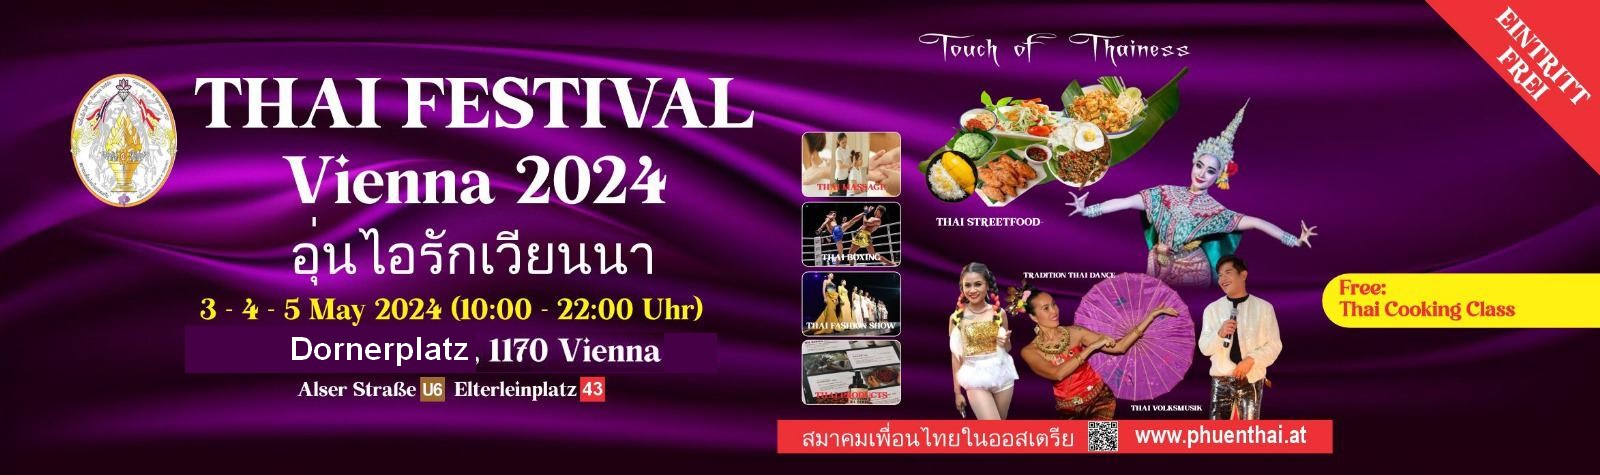 Thai Streetfood & Musical Festival Vienna - Bilder - phuenthai.at